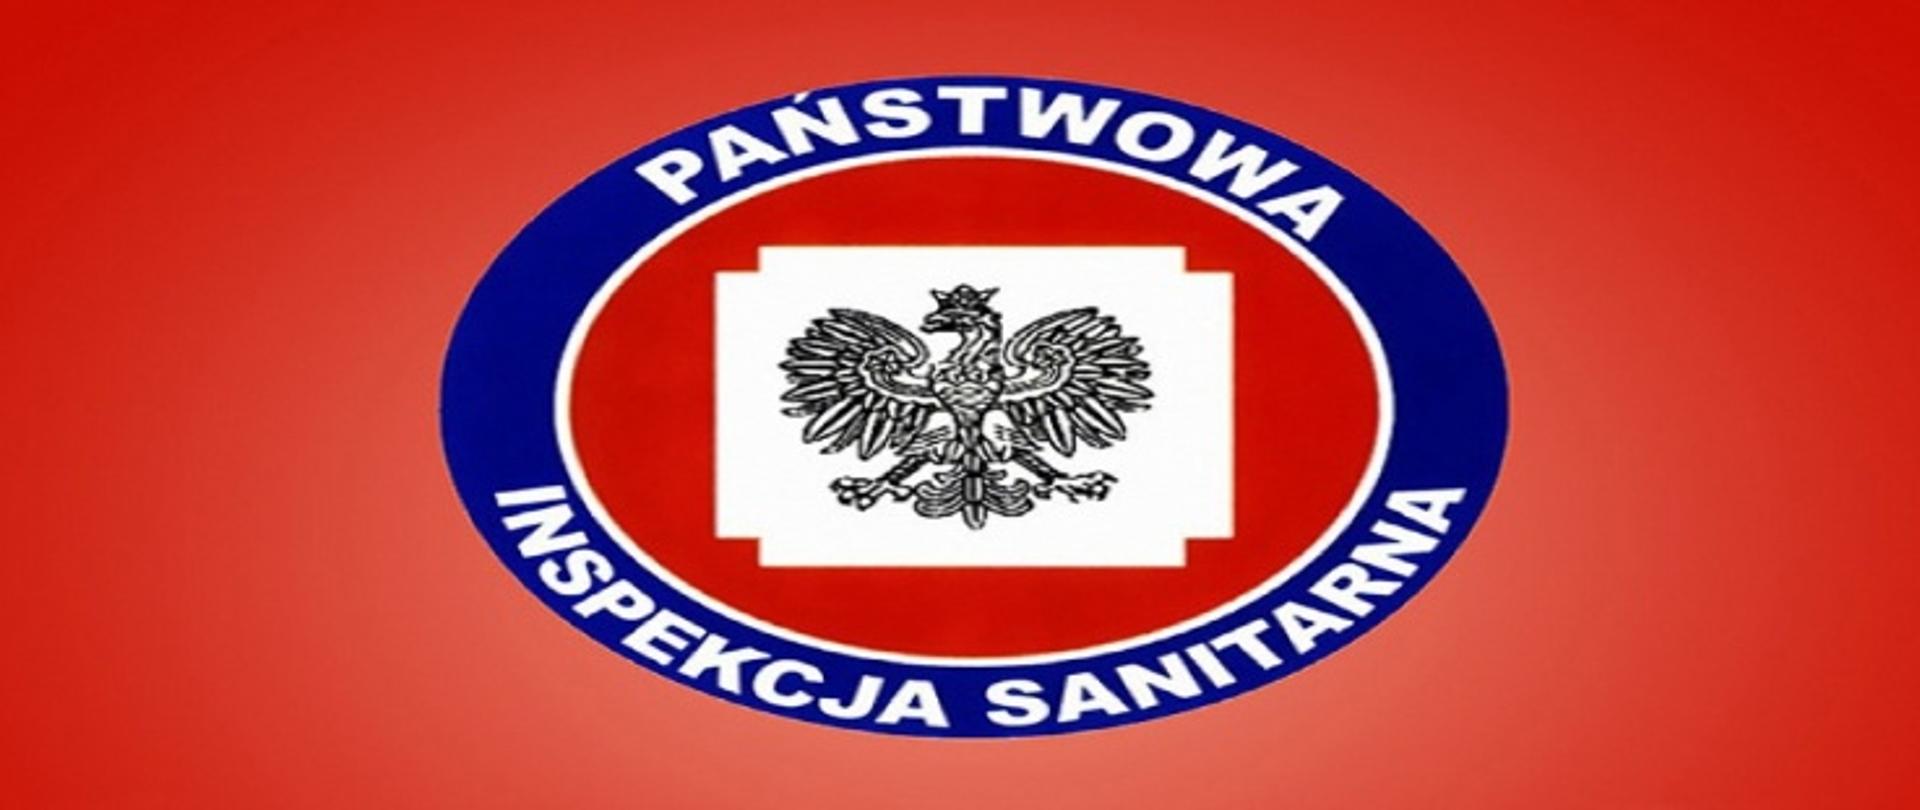 Logo Państwowej Inspekcji Sanitarnej na czerwonym tle